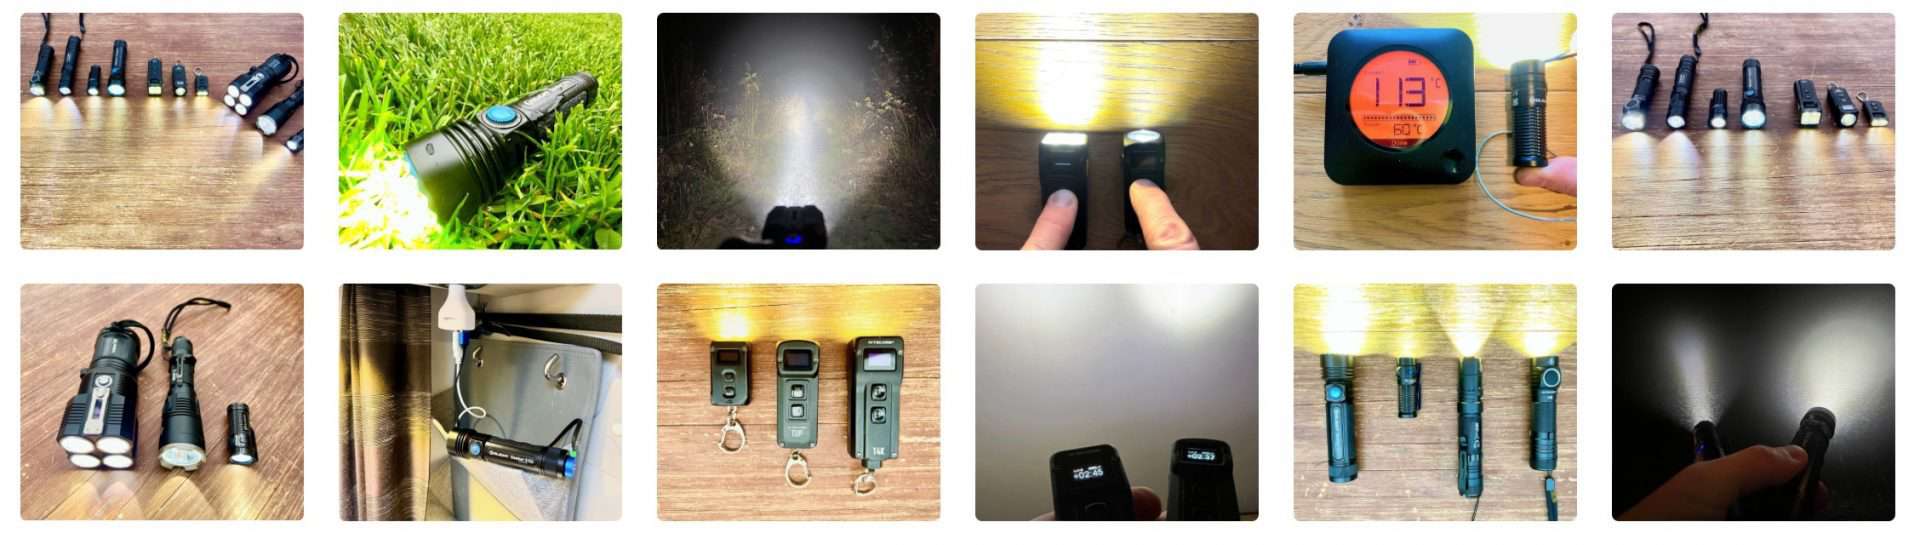 LED-Taschenlampen-Nitecore-Tini-2-Mini-T4K-TUP-E4K-NC-MH10-V2-TM28-MH27-UV-OLIGHT-Seeker-3-Pro-Baton-3-Premium-Edition-im-Test-und-Vergleich-Ueberblick